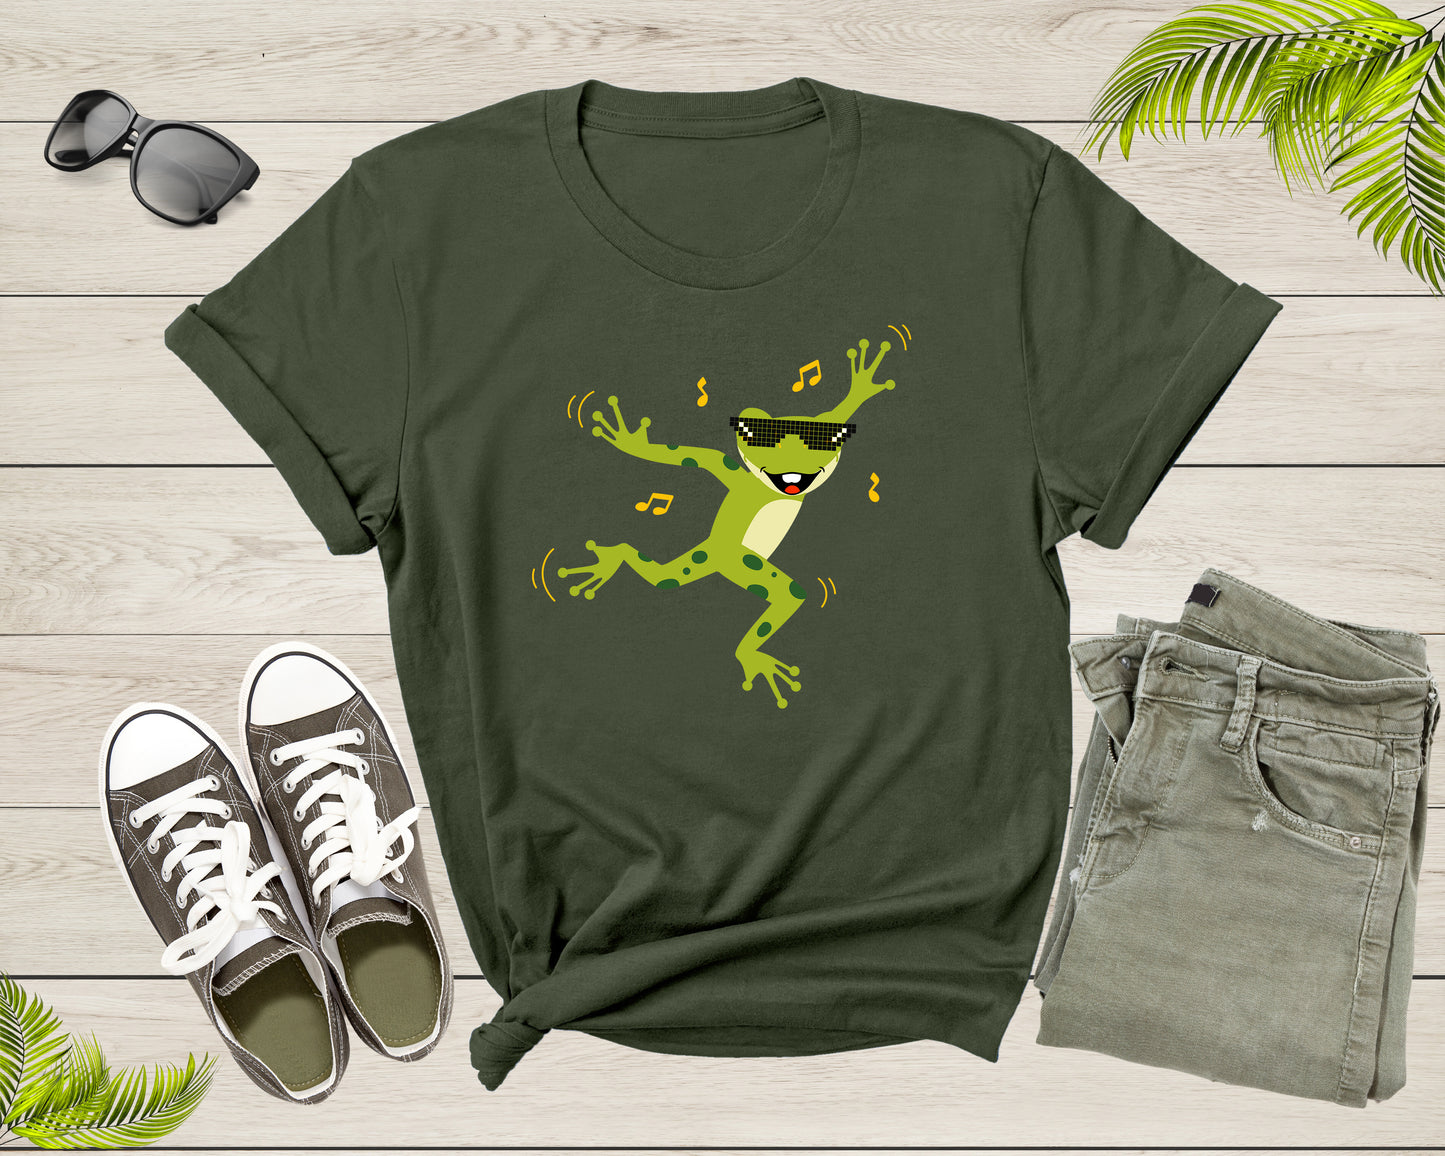 Funny Cute Green Dancing Frog Toad Cartoon for Women Men T-Shirt Frog Lover Gift T Shirt for Men Women Kids Boys Girls Graphic Tshirt